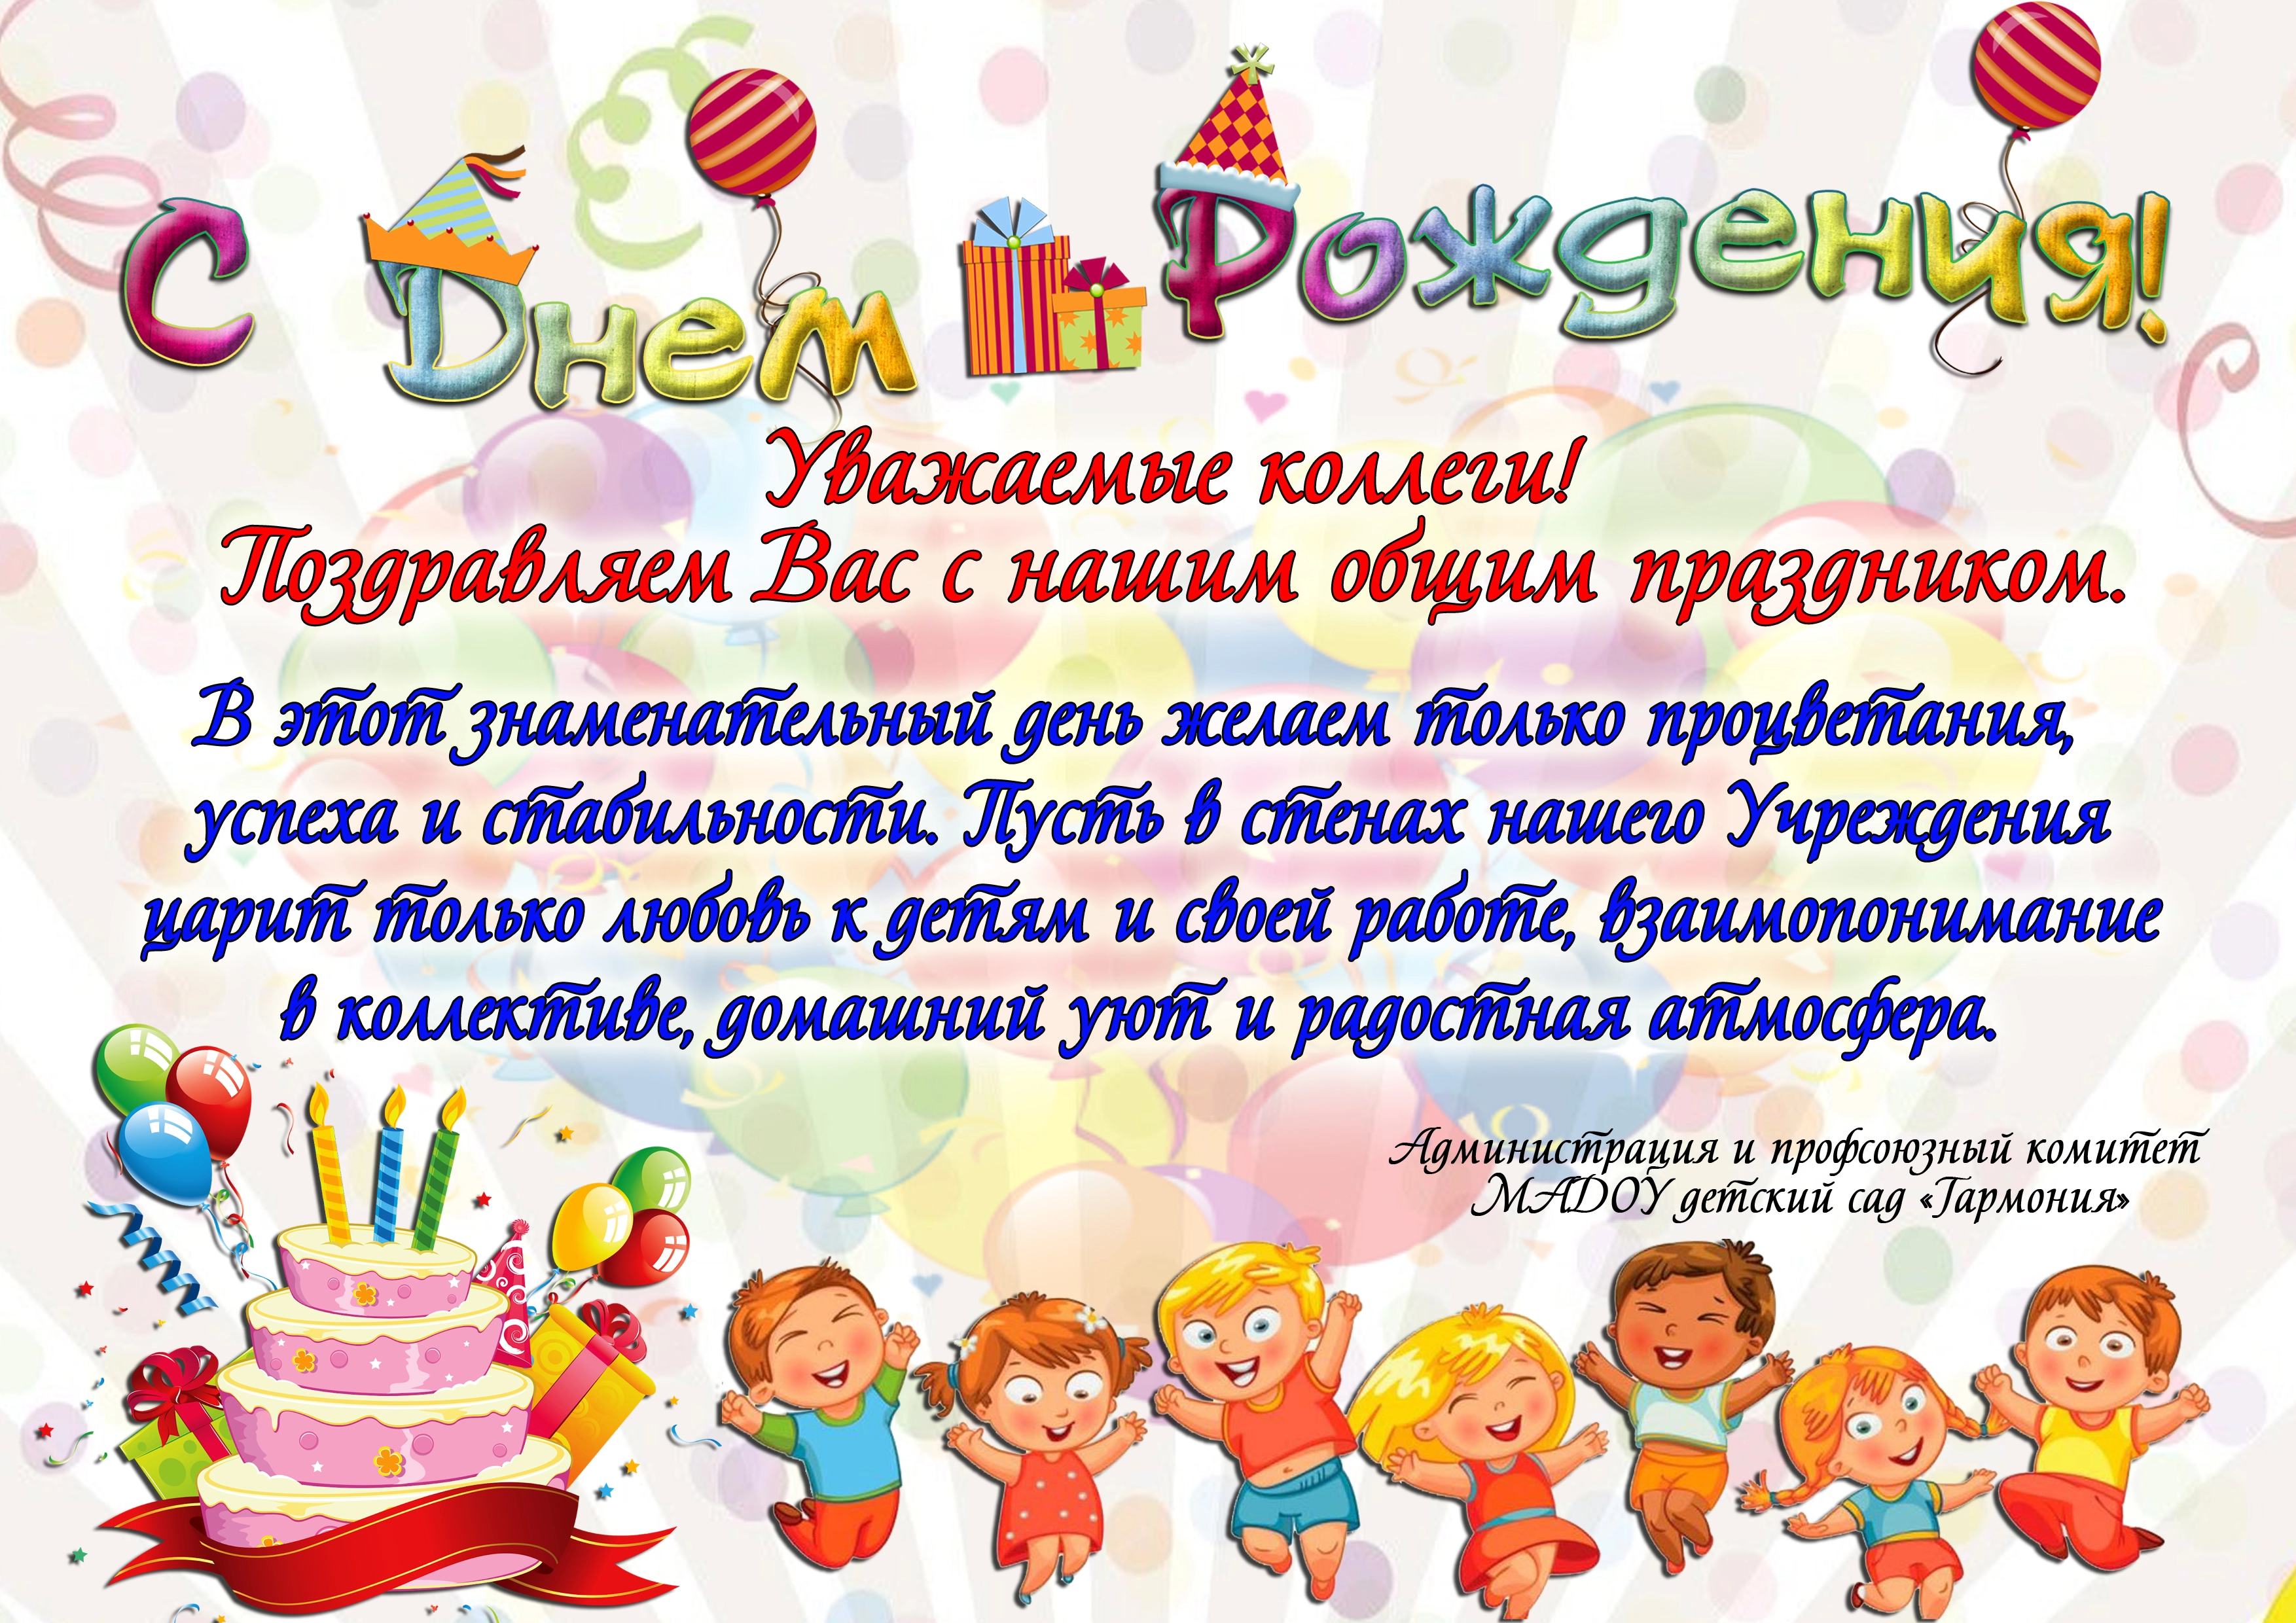 Поздравление с юбилеем детского сада. Открытка с днем рождения детский сад. С днём рождения детский сад поздравления. Открытка на день рождения садика.